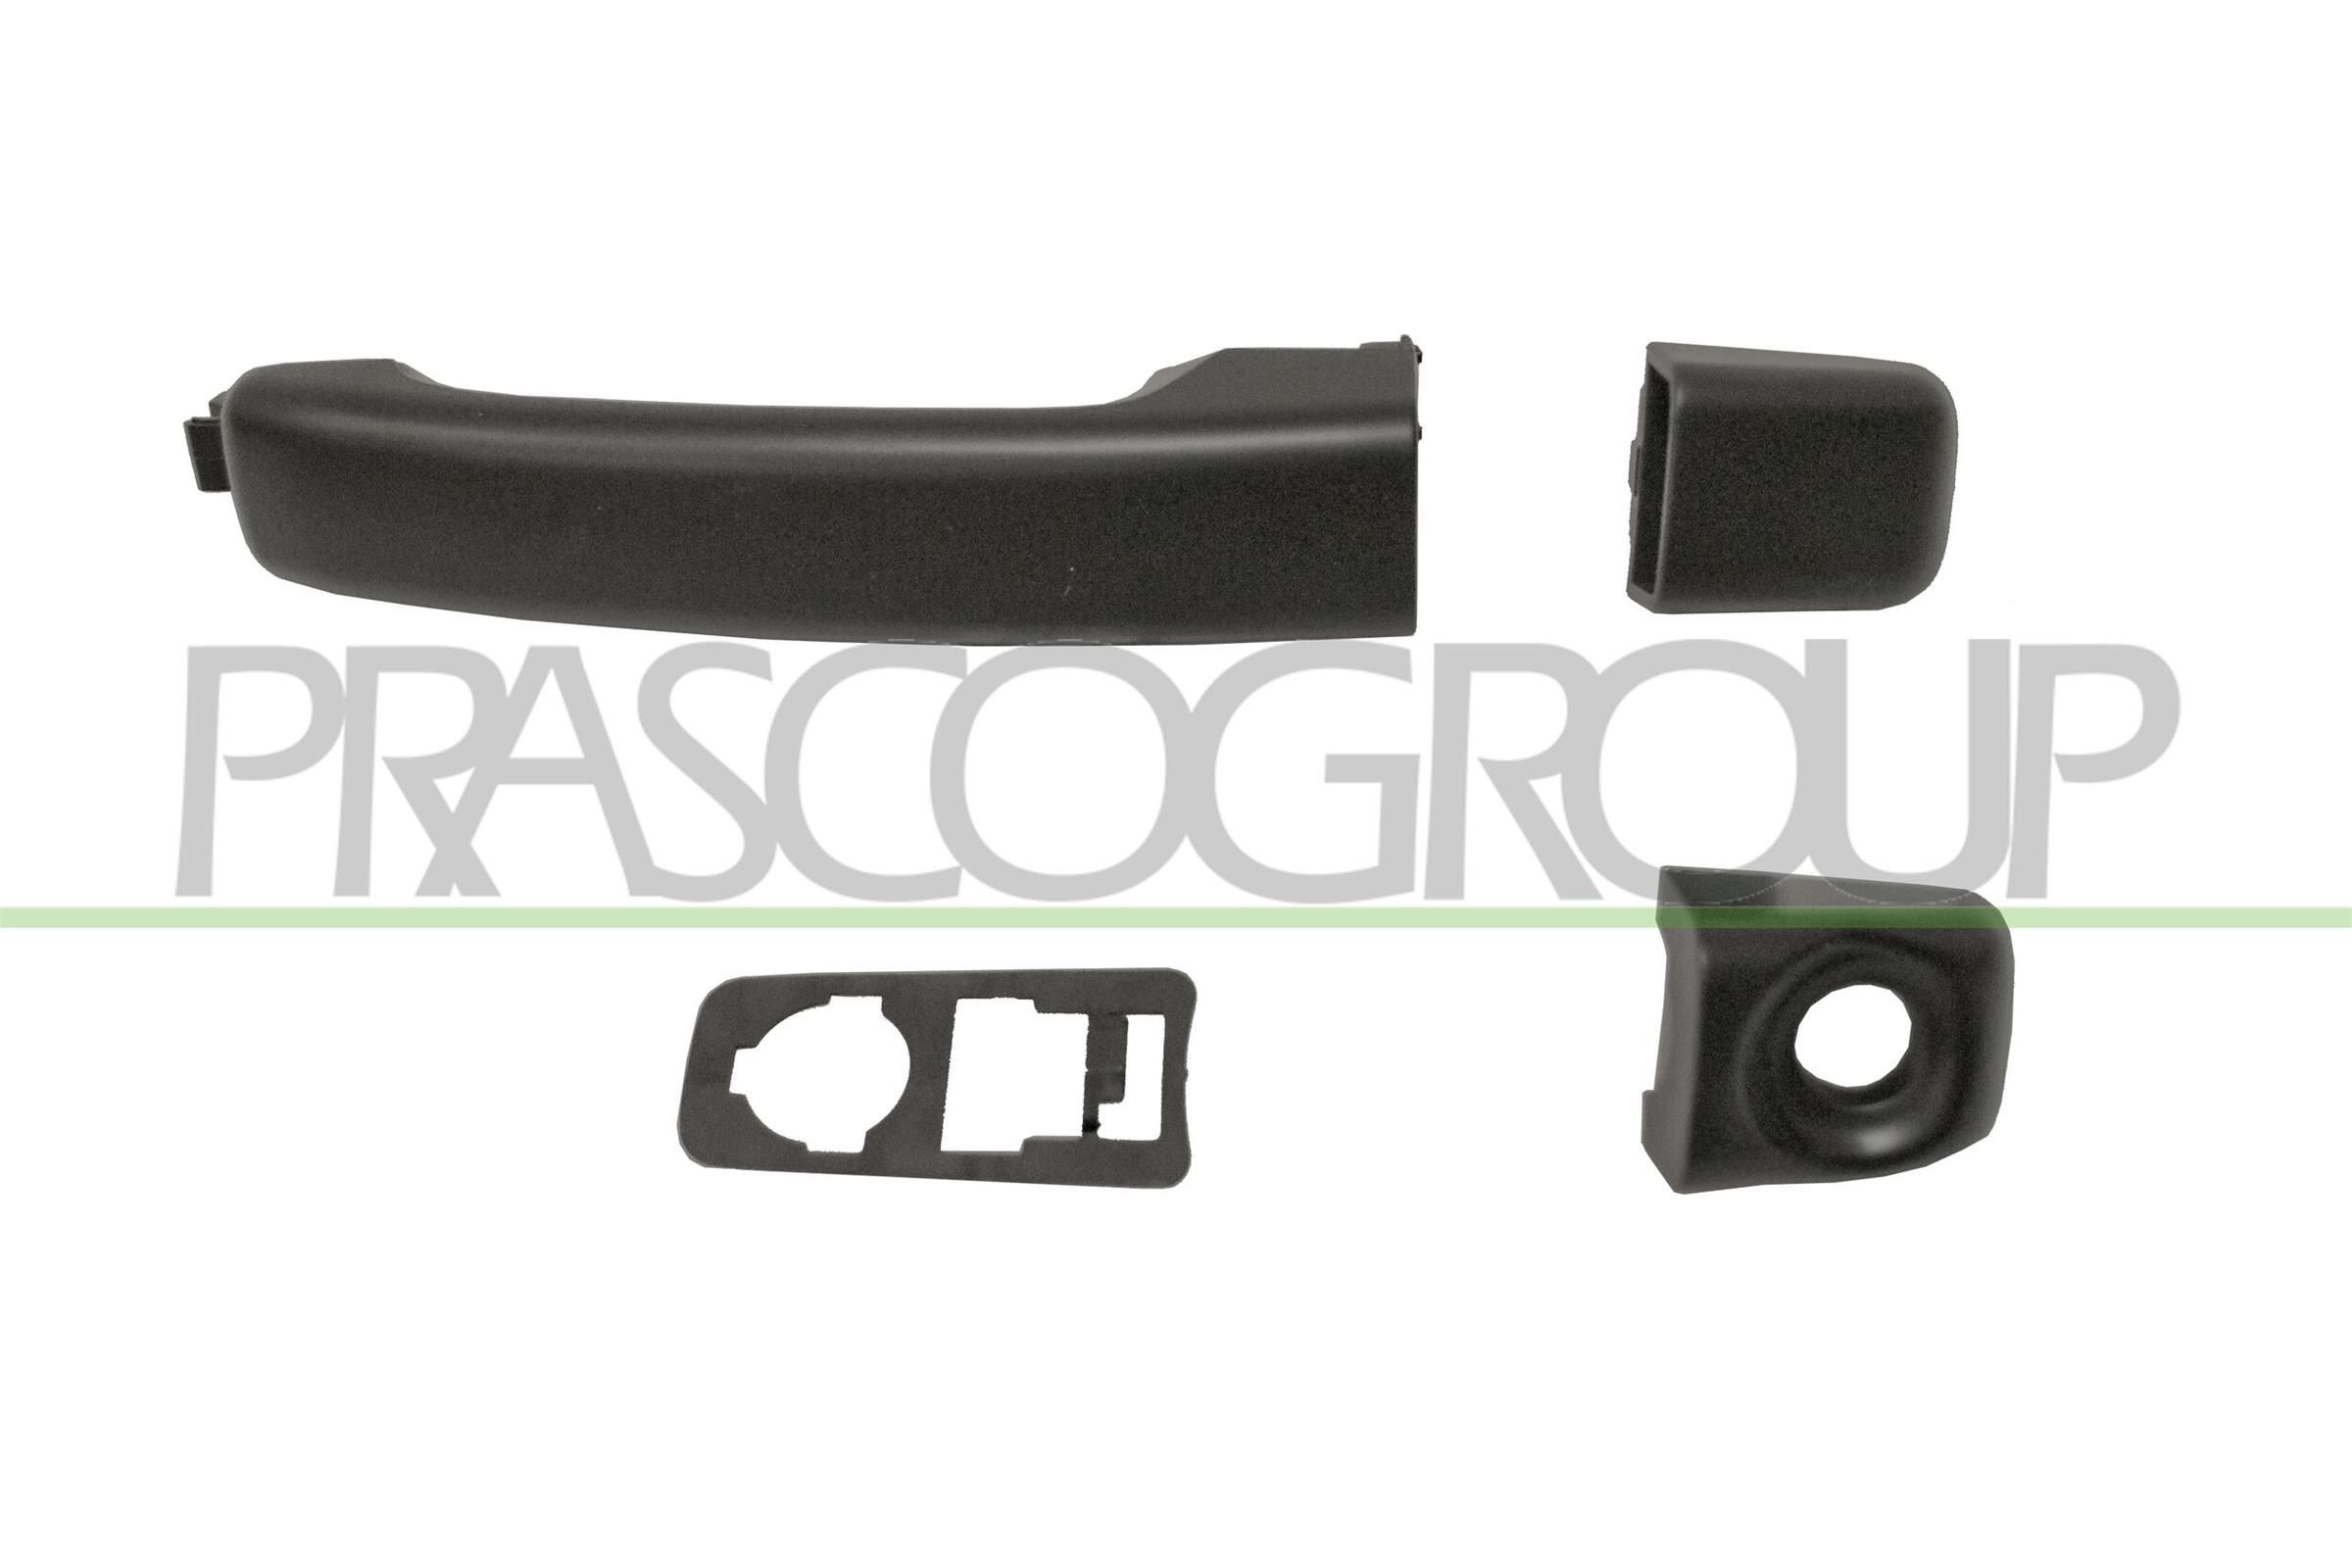 PRASCO DS9628013 Door Handle outer, Vehicle Rear Door, Left Rear, Left Front, Right Rear, Right Front, primed